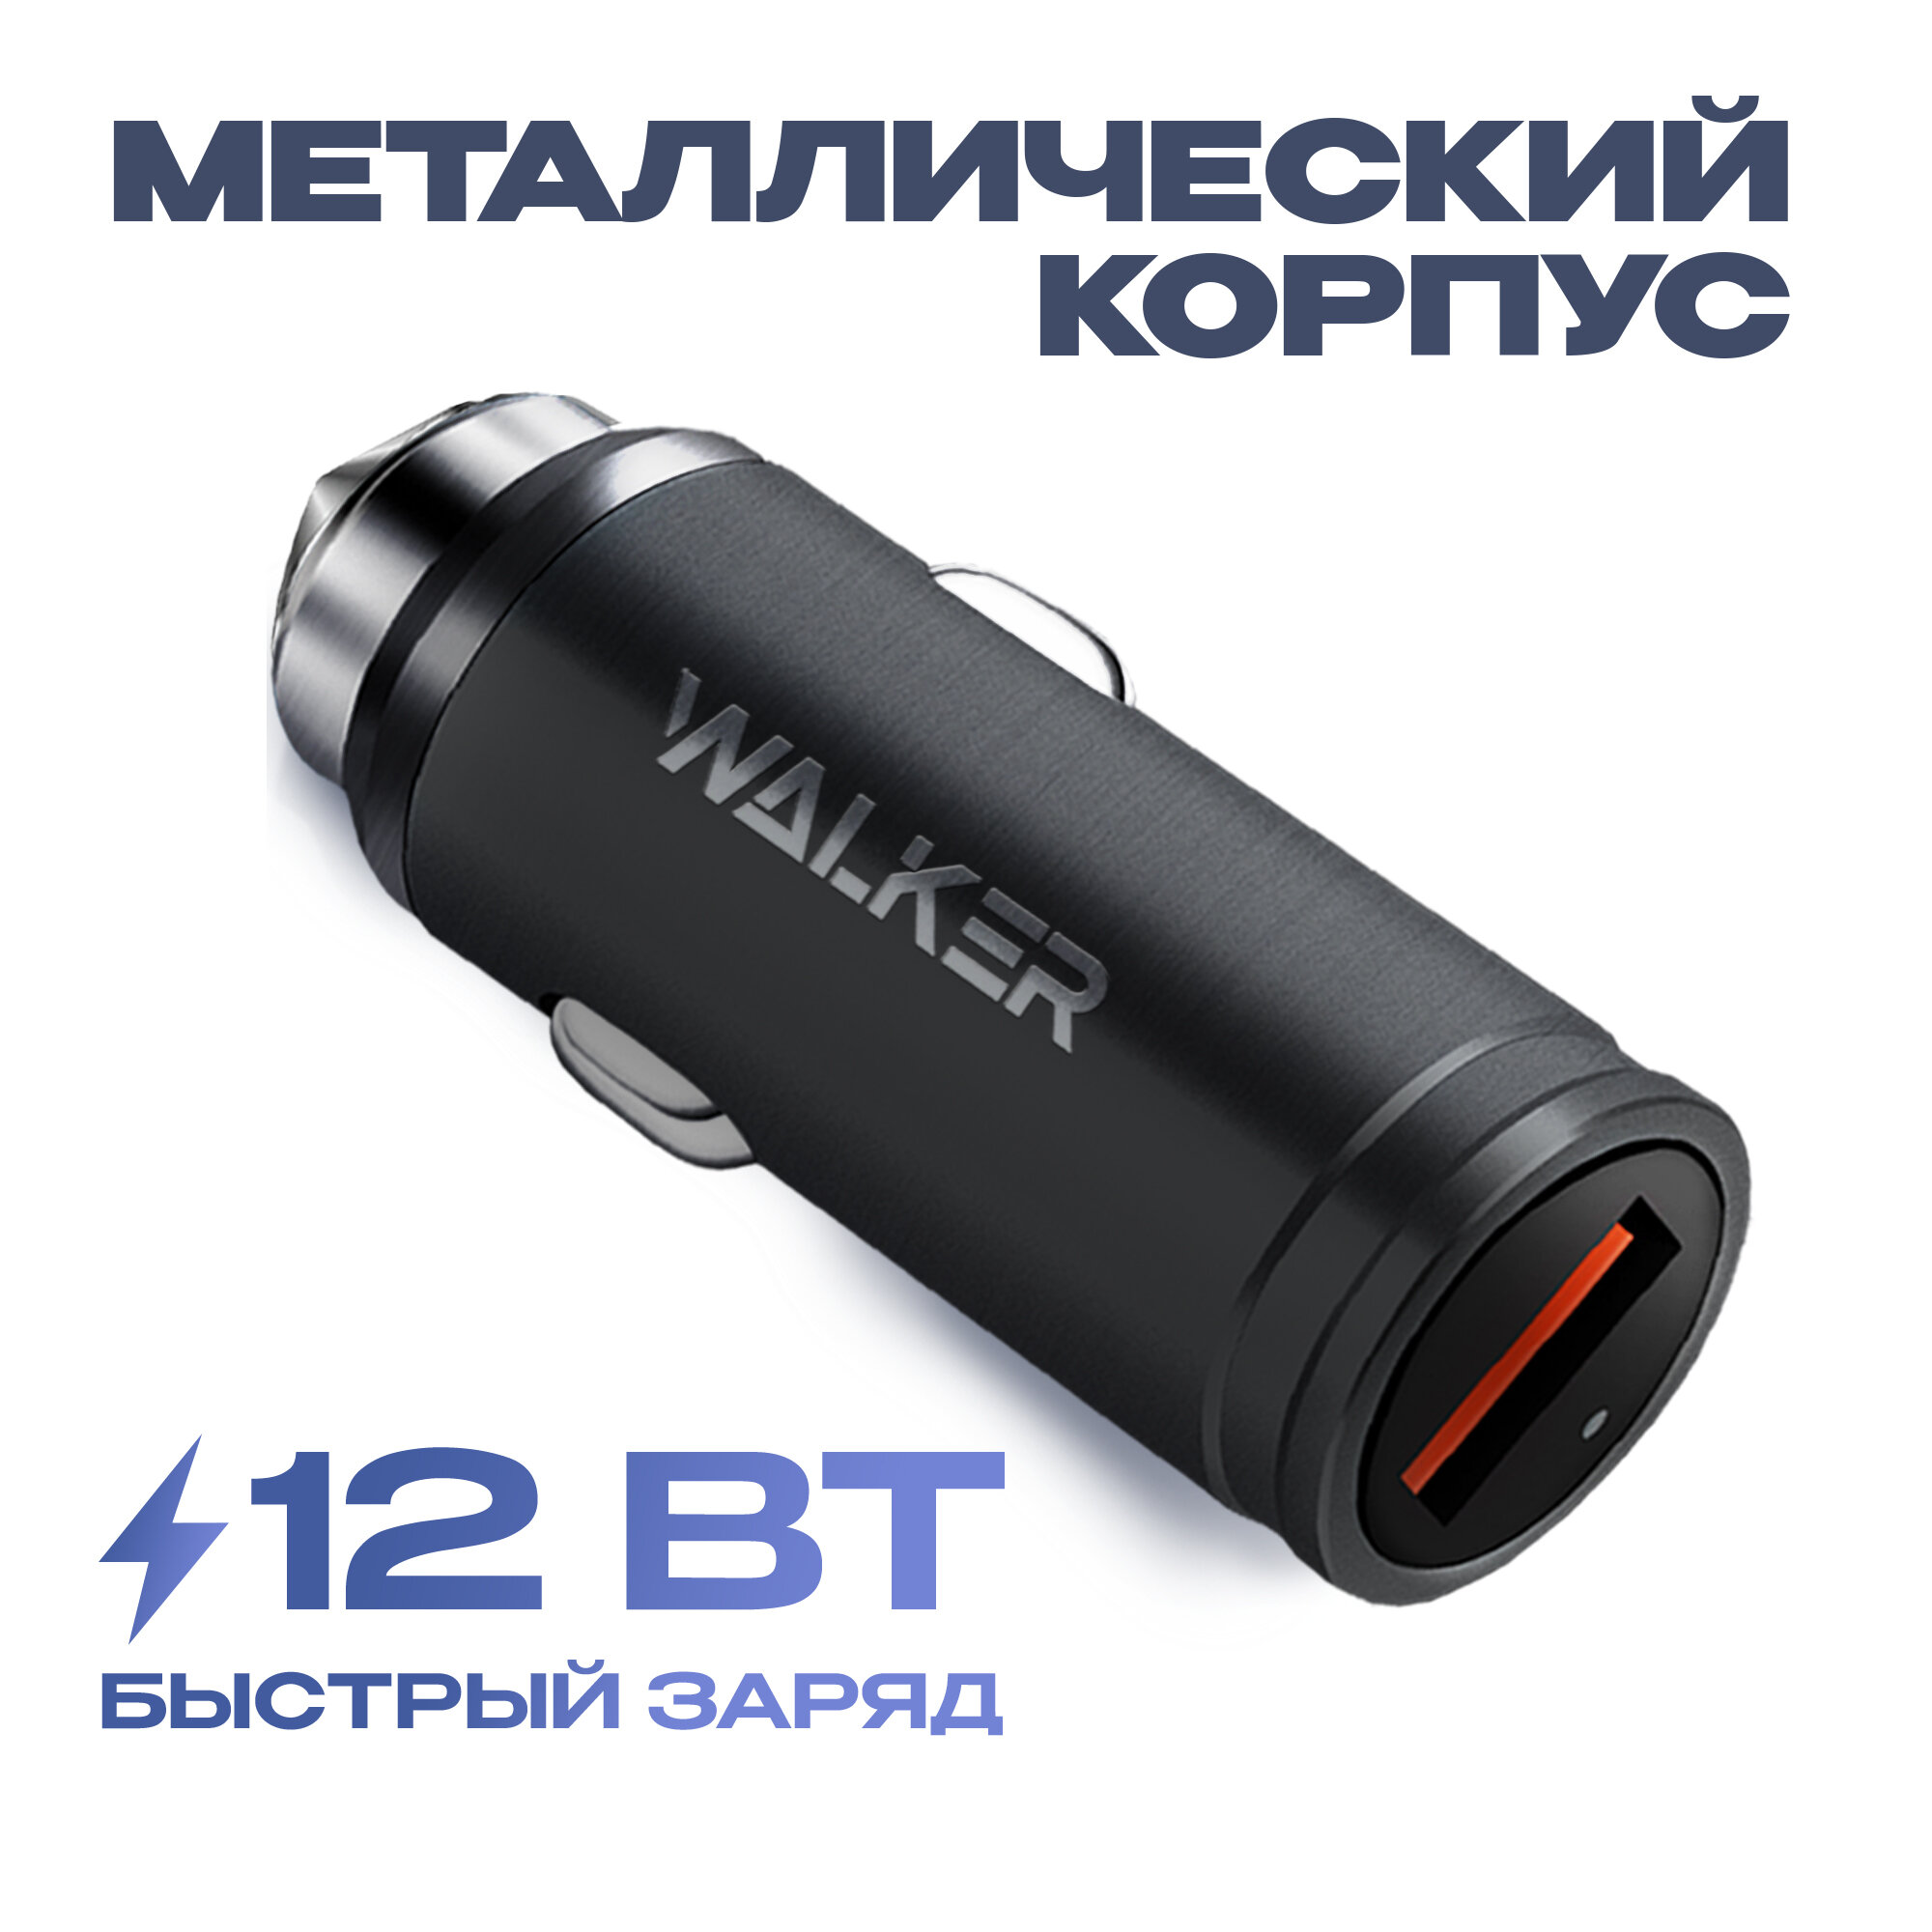 Автомобильное быстрое зарядное устройство для телефона, WALKER, WCR-23, 18 Вт, 2,4 А, зарядка USB в прикуриватель, блок питания в машину, черное